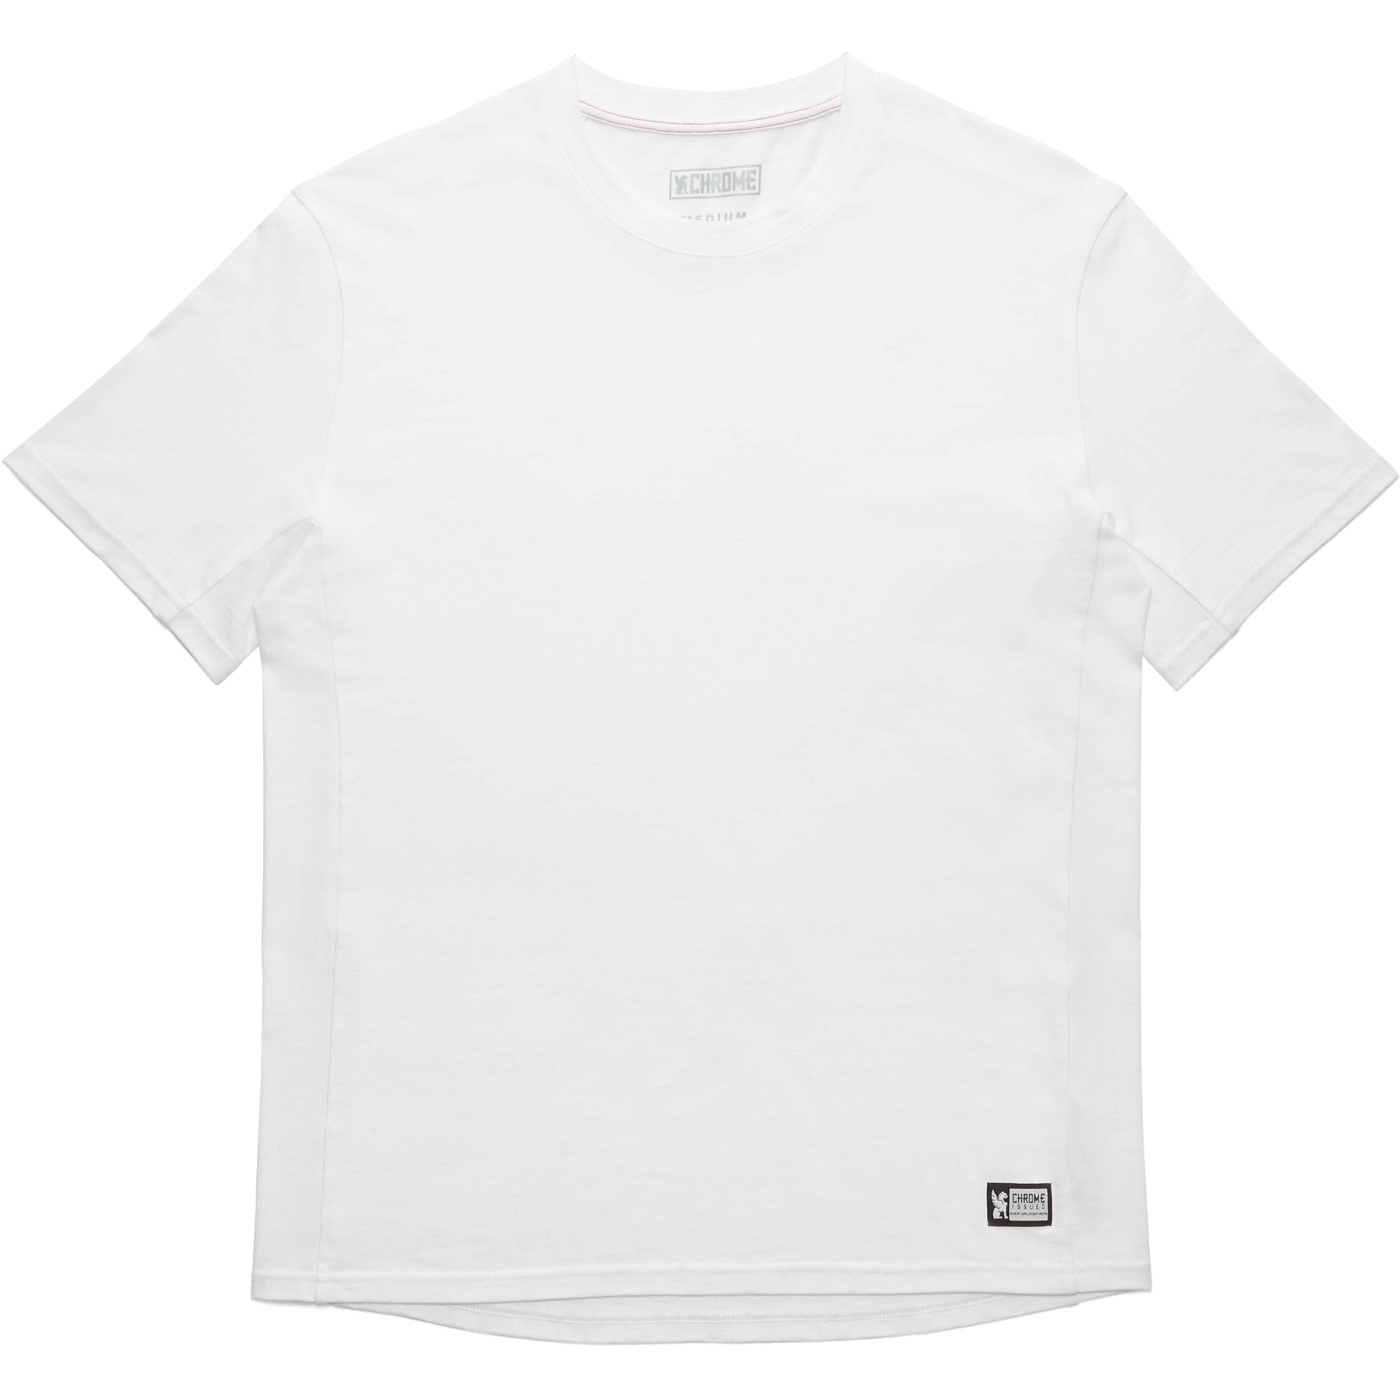 Produktbild von CHROME Issued Short Sleeve Tee T-Shirt - White